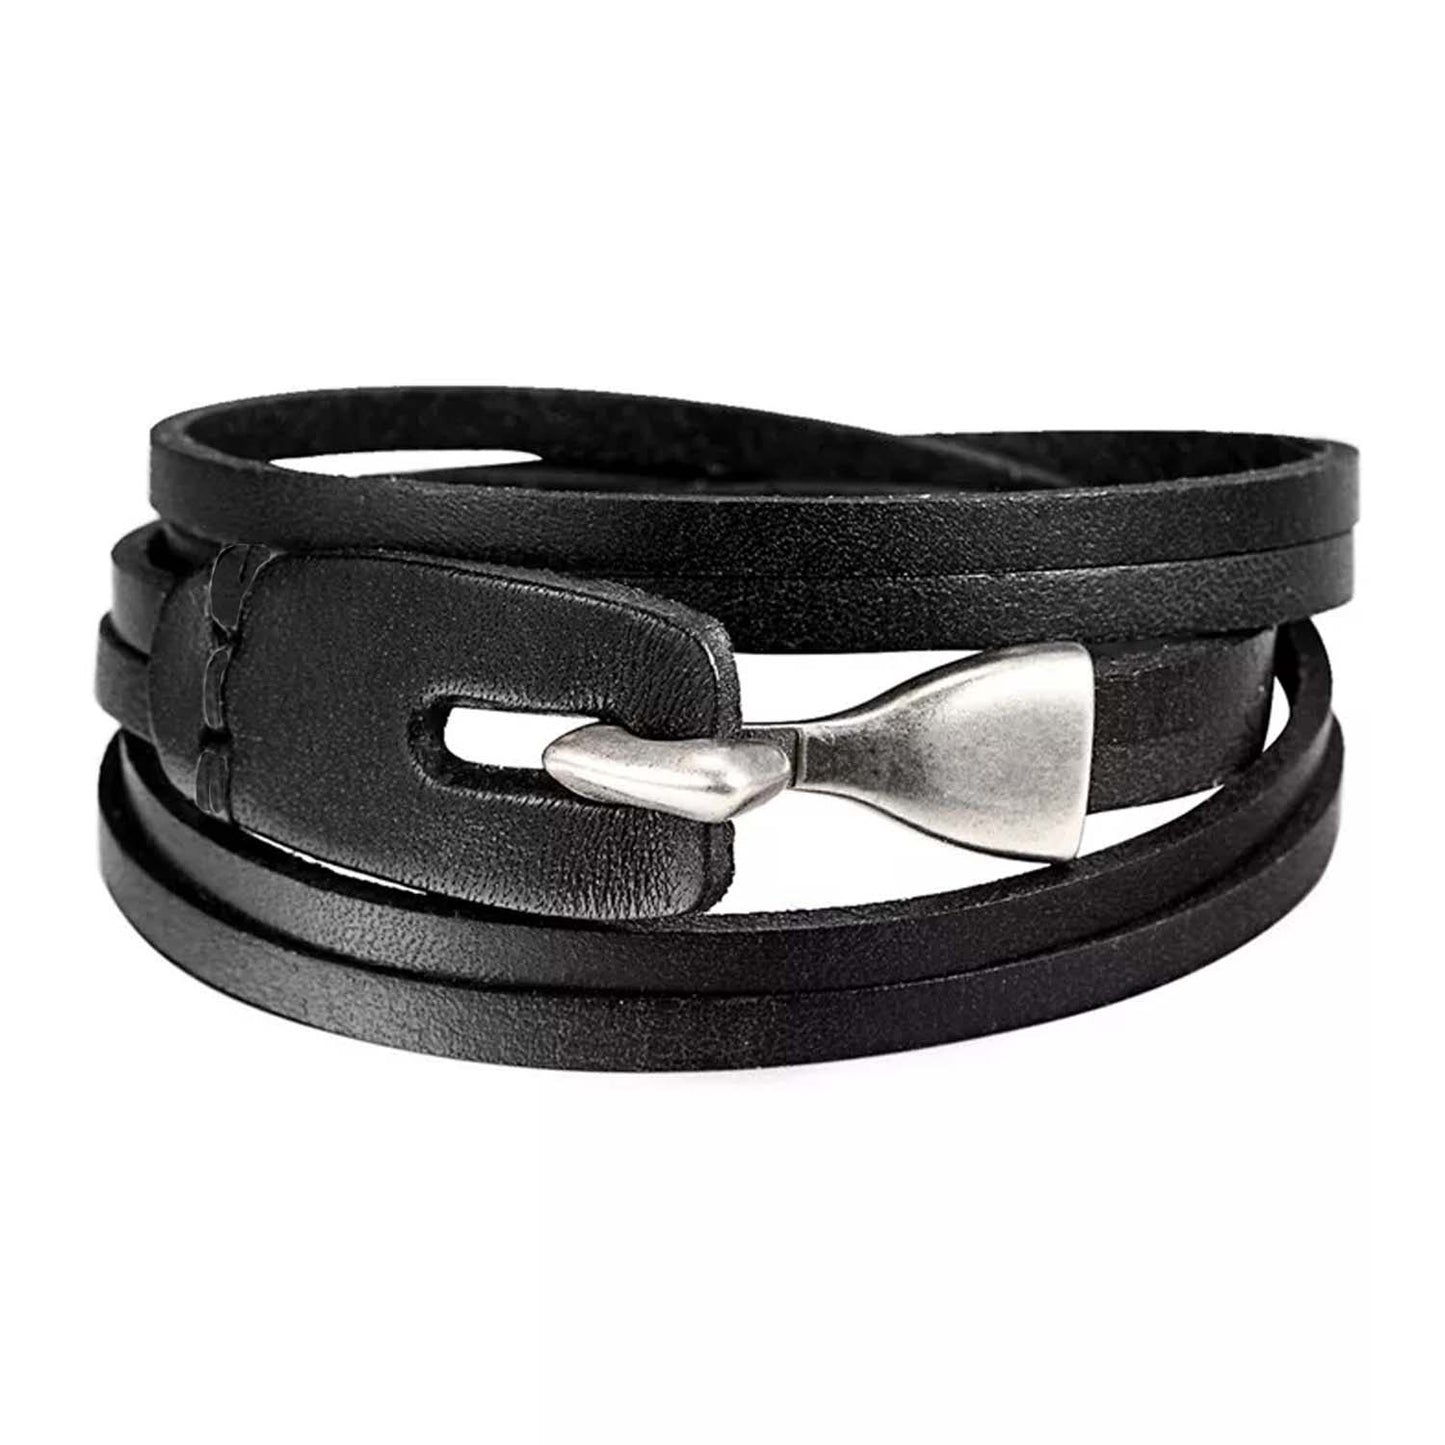 Black Leather Multilayer  Bracelet With Metal Hook Closure